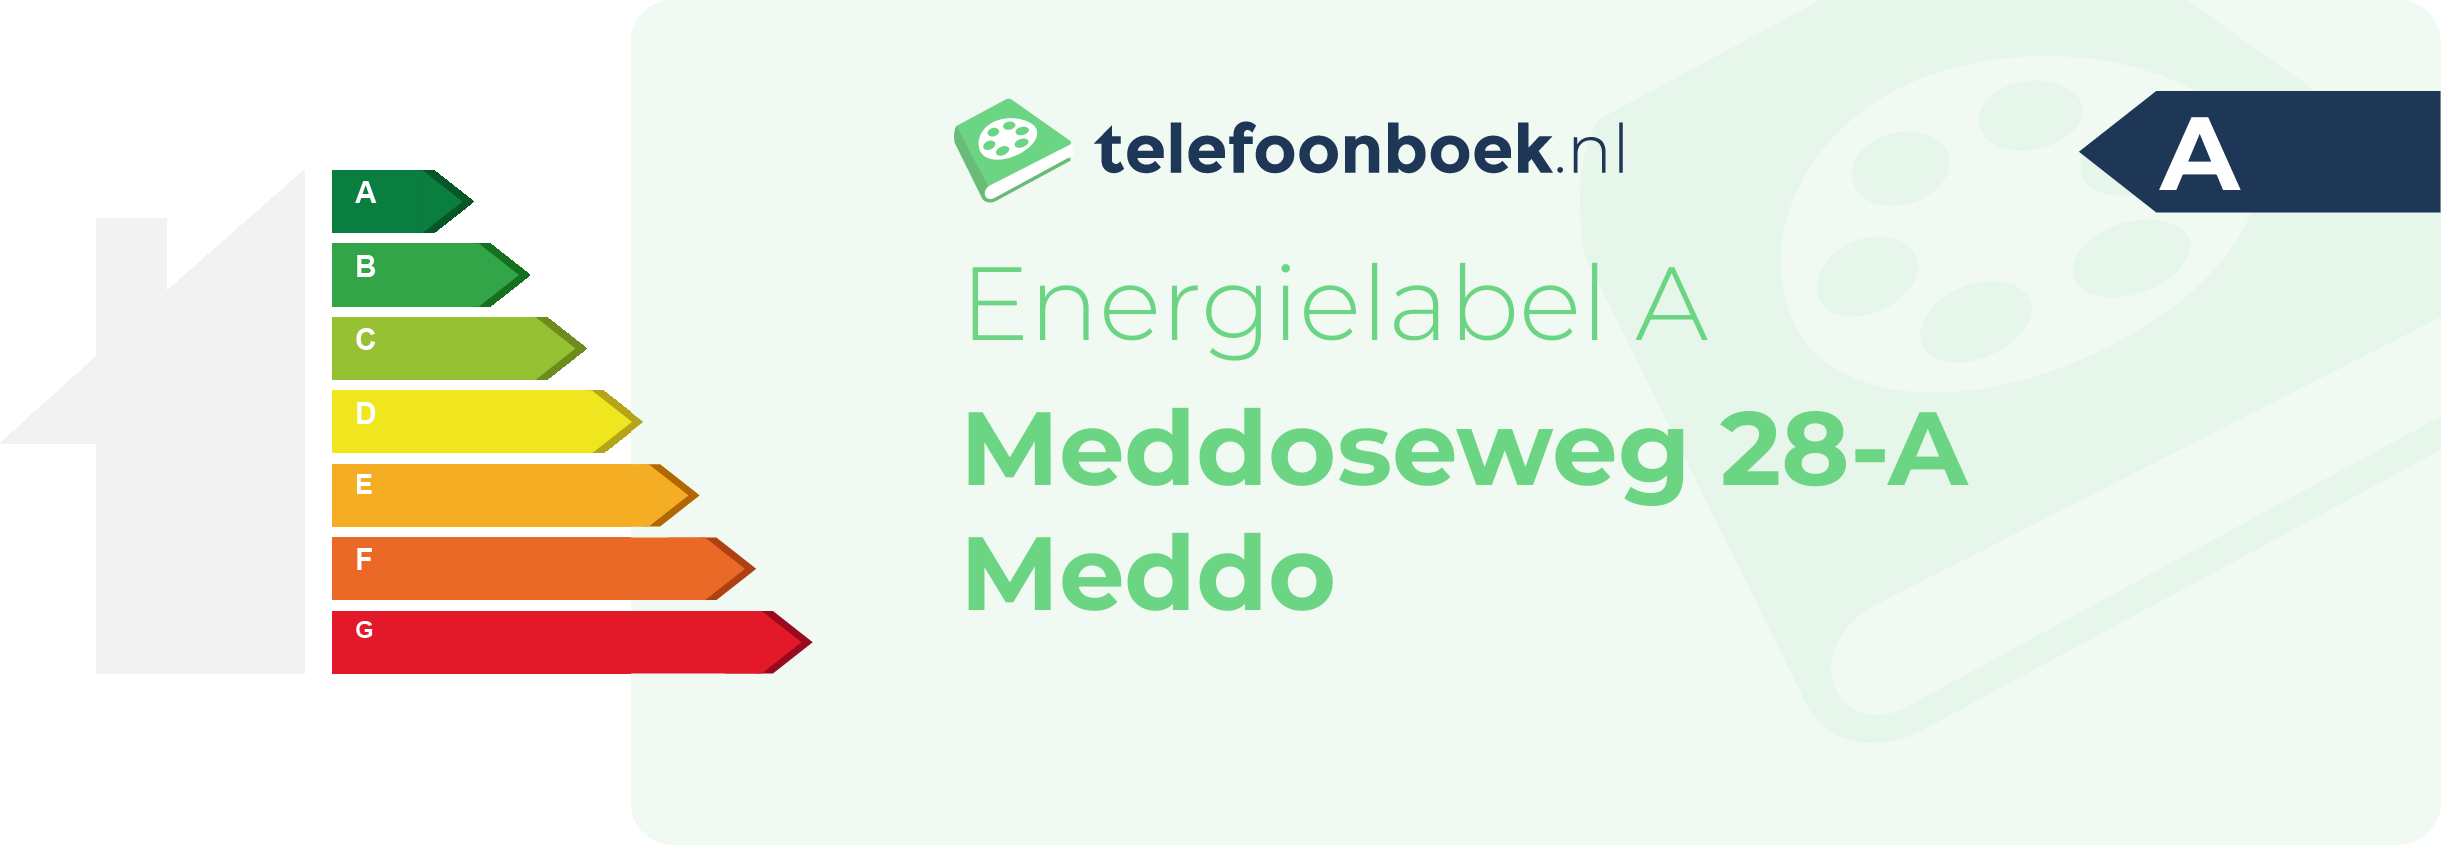 Energielabel Meddoseweg 28-A Meddo